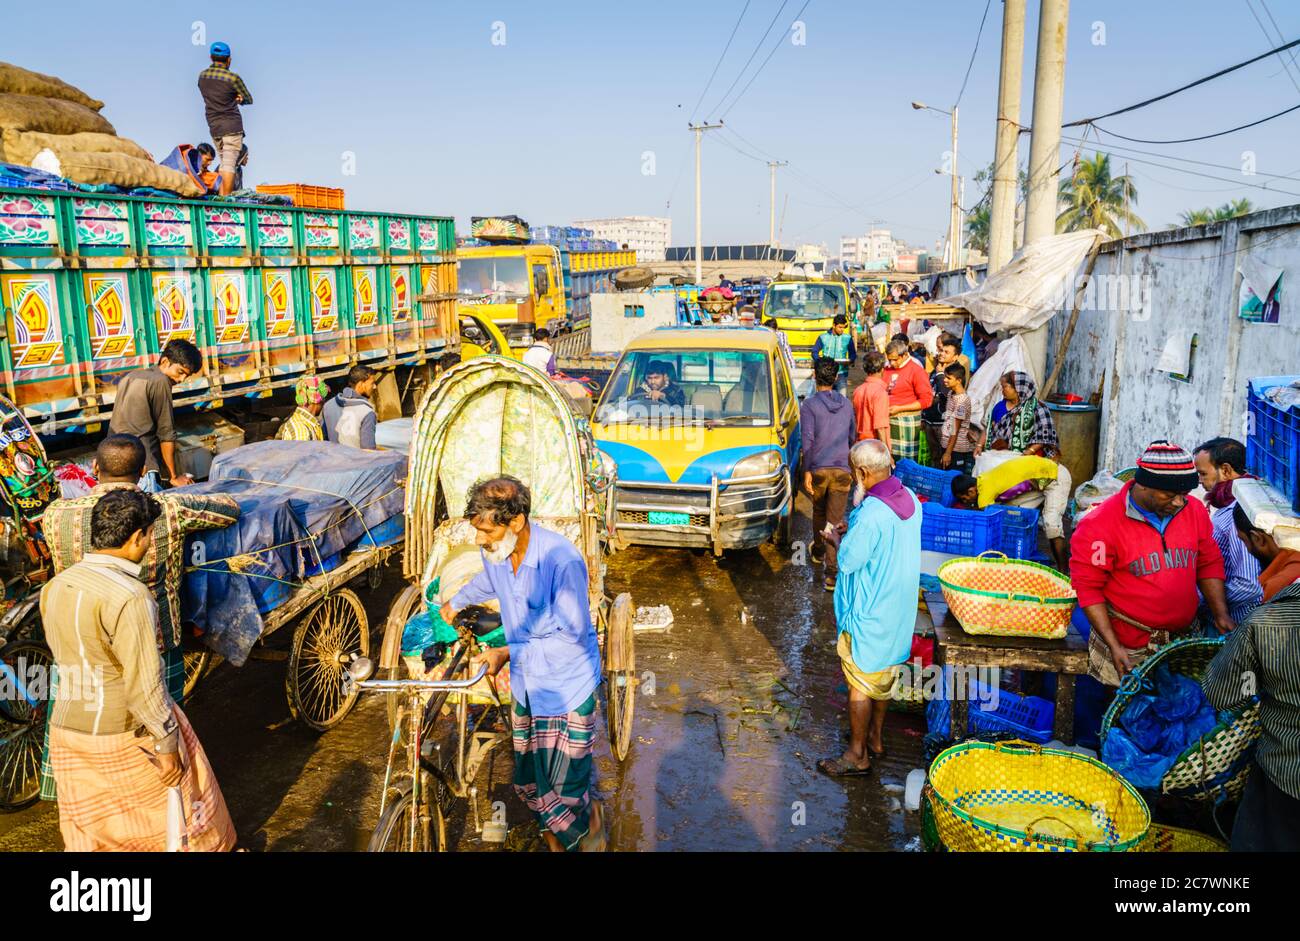 Chittagong, Bangladesch, 23. Dezember 2017: Verkehr in der Gasse, die zum Fischmarkt nahe dem Karnaphuli Fluss in Chittagong führt Stockfoto